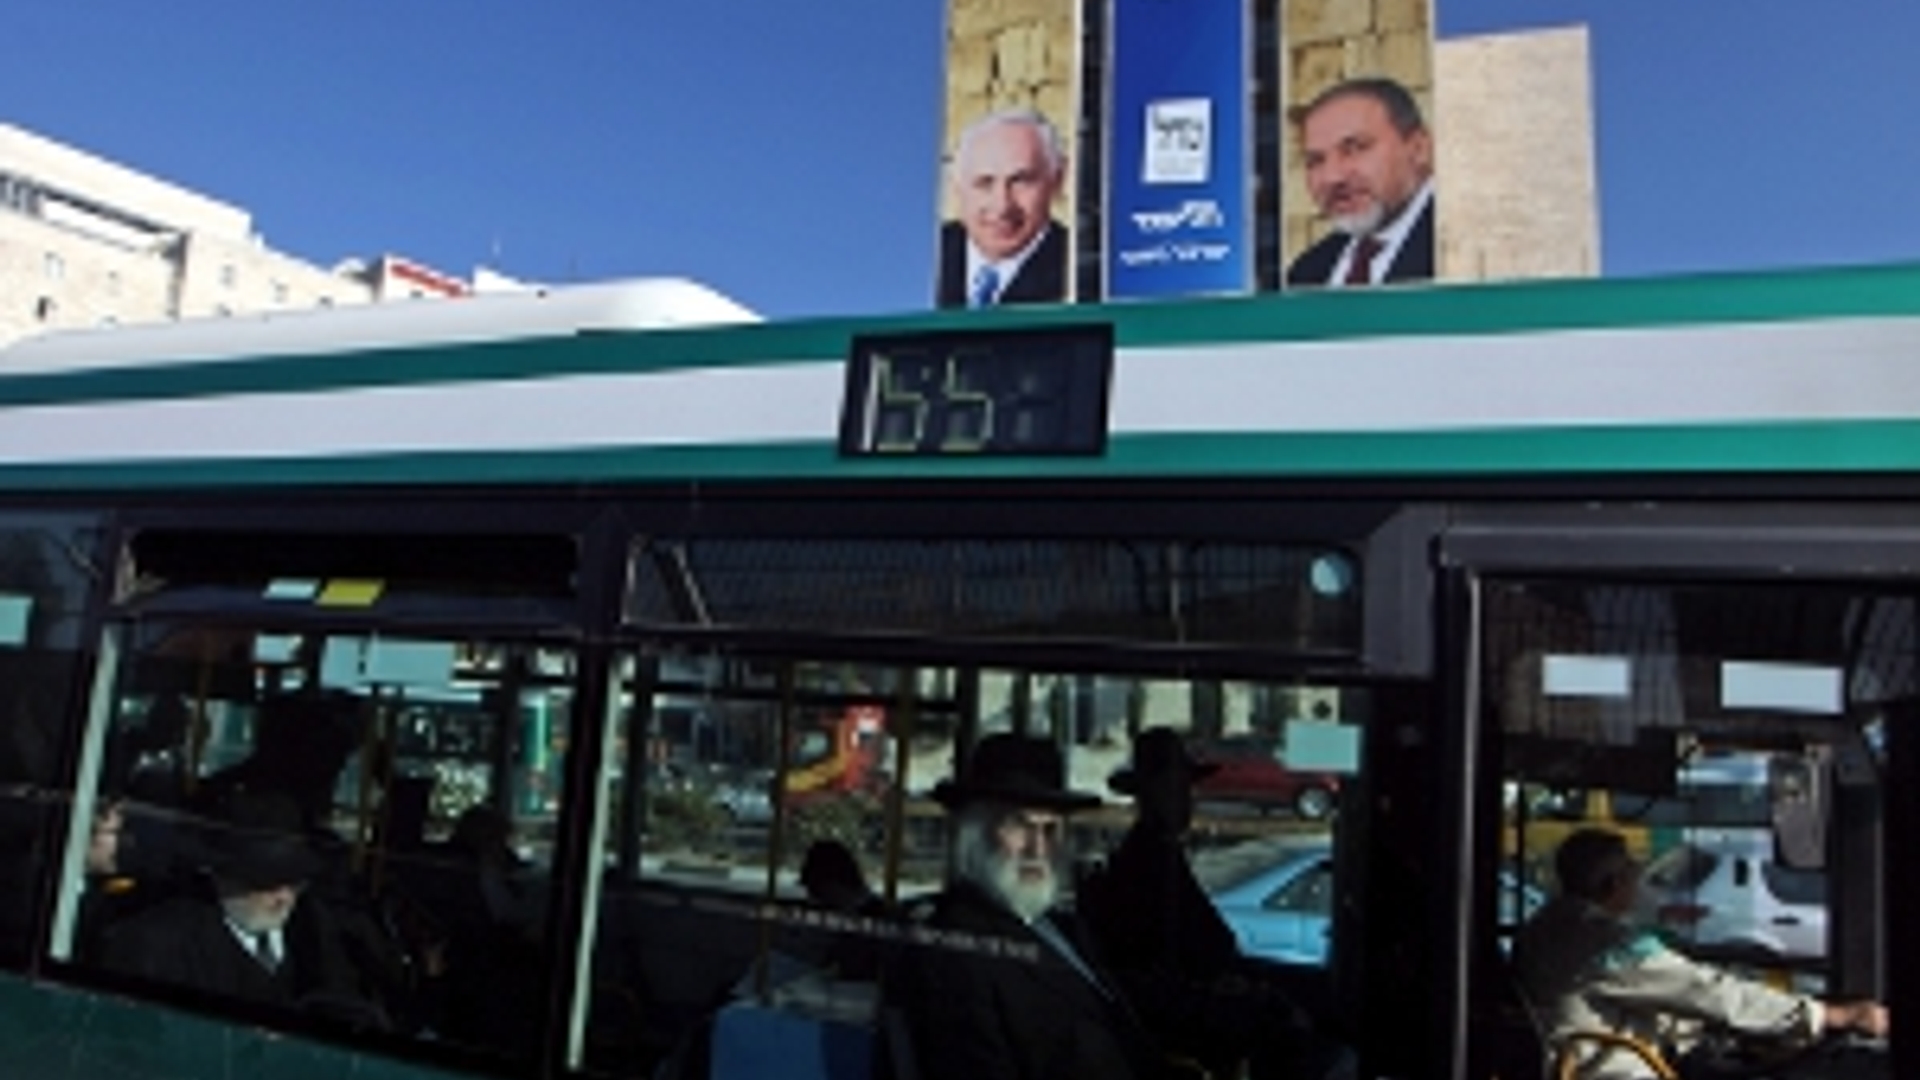 ANP-Israël_bus300.jpg